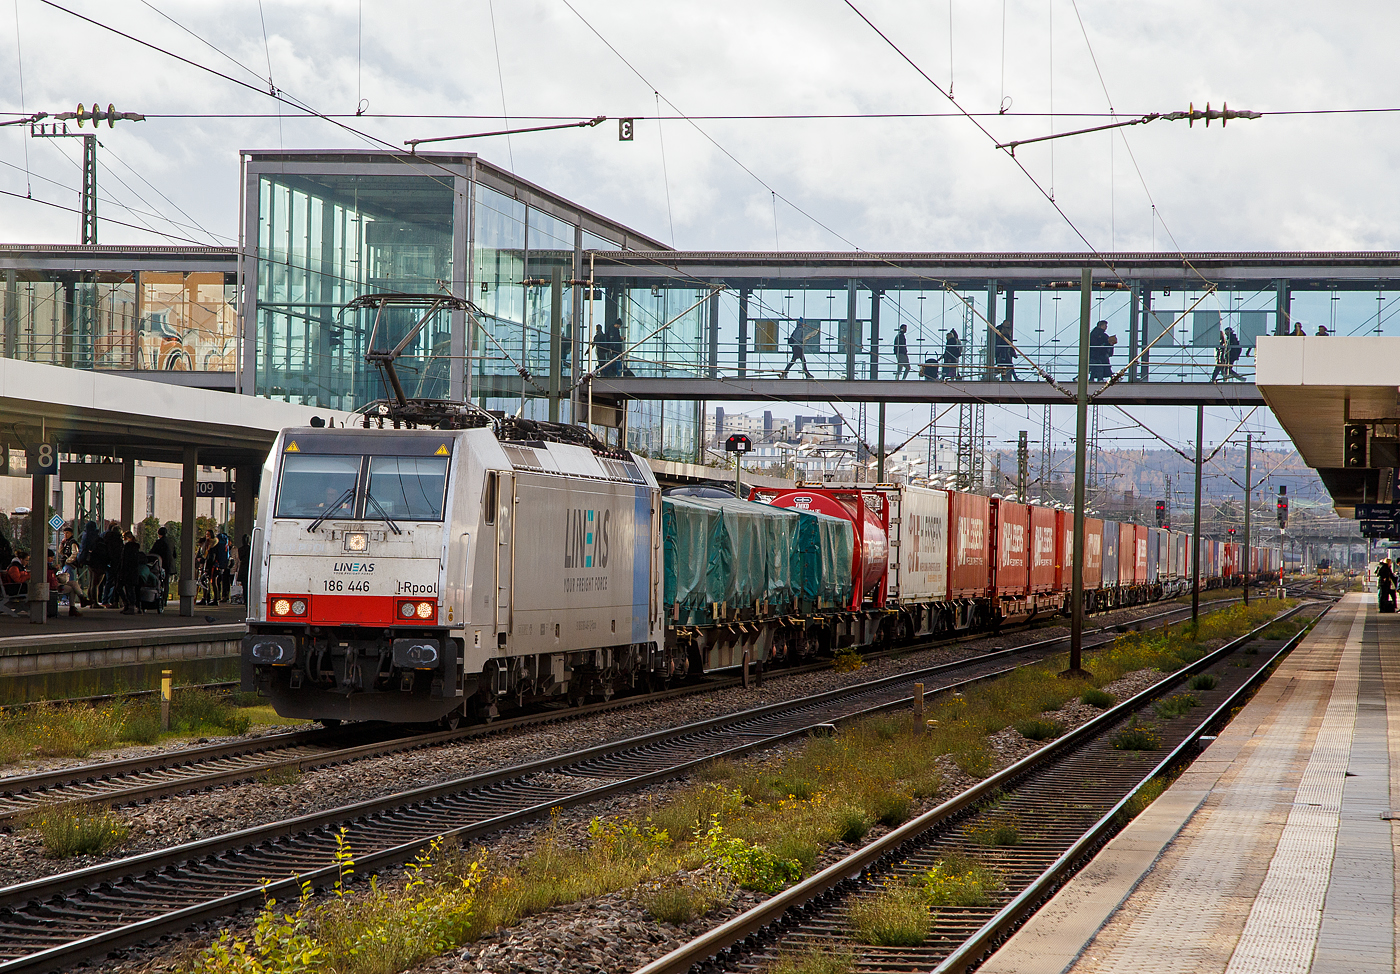 Die an die LINEAS Group NV/SA vermietete 186 446-1 (91 80 6186 446-1 D-Rpool) fhrt am 24.11.2022 mit einem KLV-Zug durch den Hauptbahnhof Regensburg.

Die Bombardier TRAXX F140 MS(2E) wurde 2017 von Bombardier in Kassel unter der Fabriknummer 35401 gebaut und an die Railpool ausgeliefert. Die Multisystemlokomotive hat die Zulassungen bzw. besitzt die Lnderpakete fr Deutschland, sterreich, Schweiz, Italien, Belgien und die Niederland (D/A/CH/I/B/NL). 
